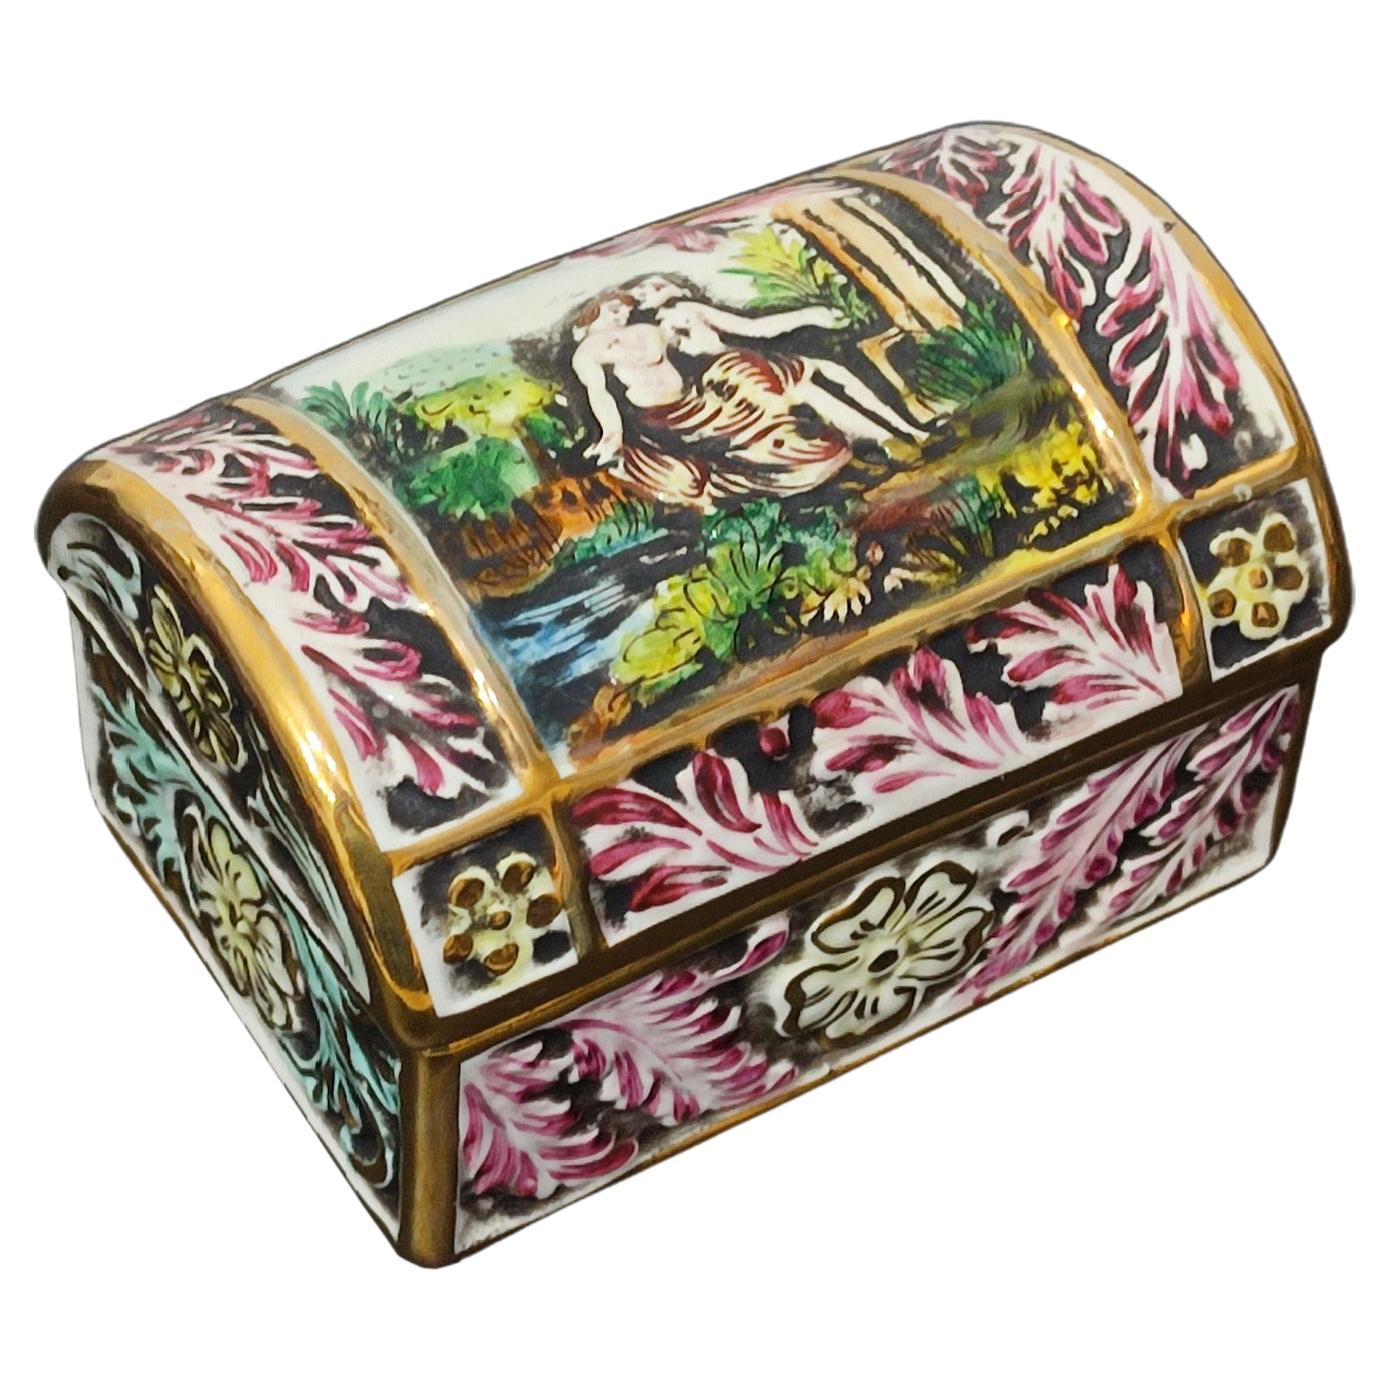 Capodimonte Porcelain Chest, Jewelry Box, Italy Mid 20th Century - LIVRAISON GRATUITE en vente